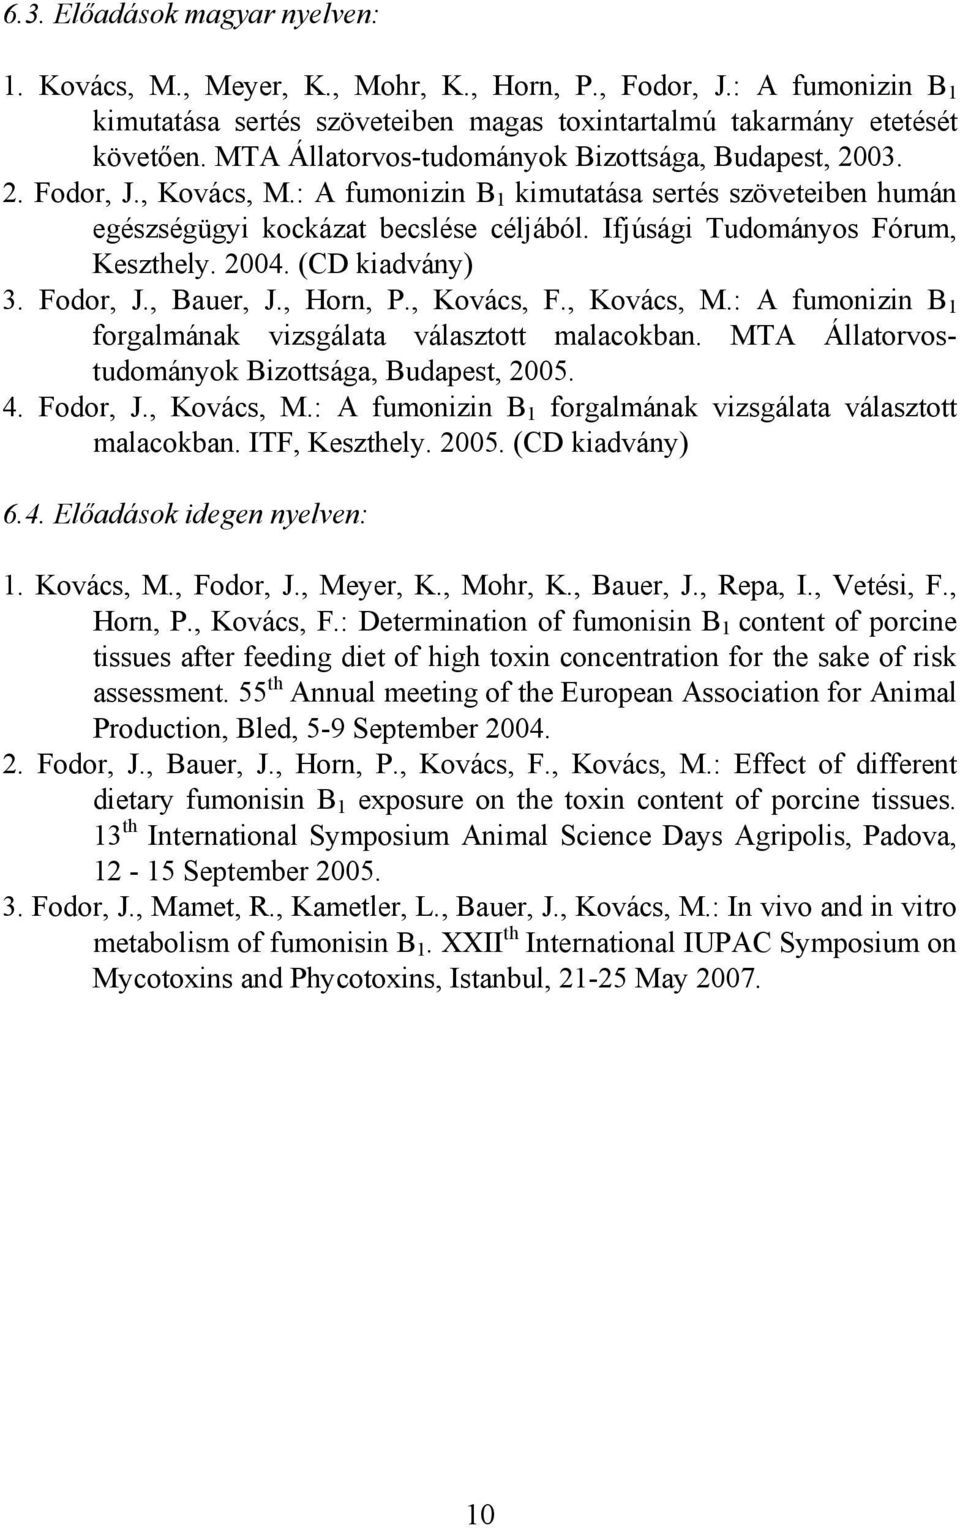 Ifjúsági Tudományos Fórum, Keszthely. 2004. (CD kiadvány) 3. Fodor, J., Bauer, J., Horn, P., Kovács, F., Kovács, M.: A fumonizin B 1 forgalmának vizsgálata választott malacokban.